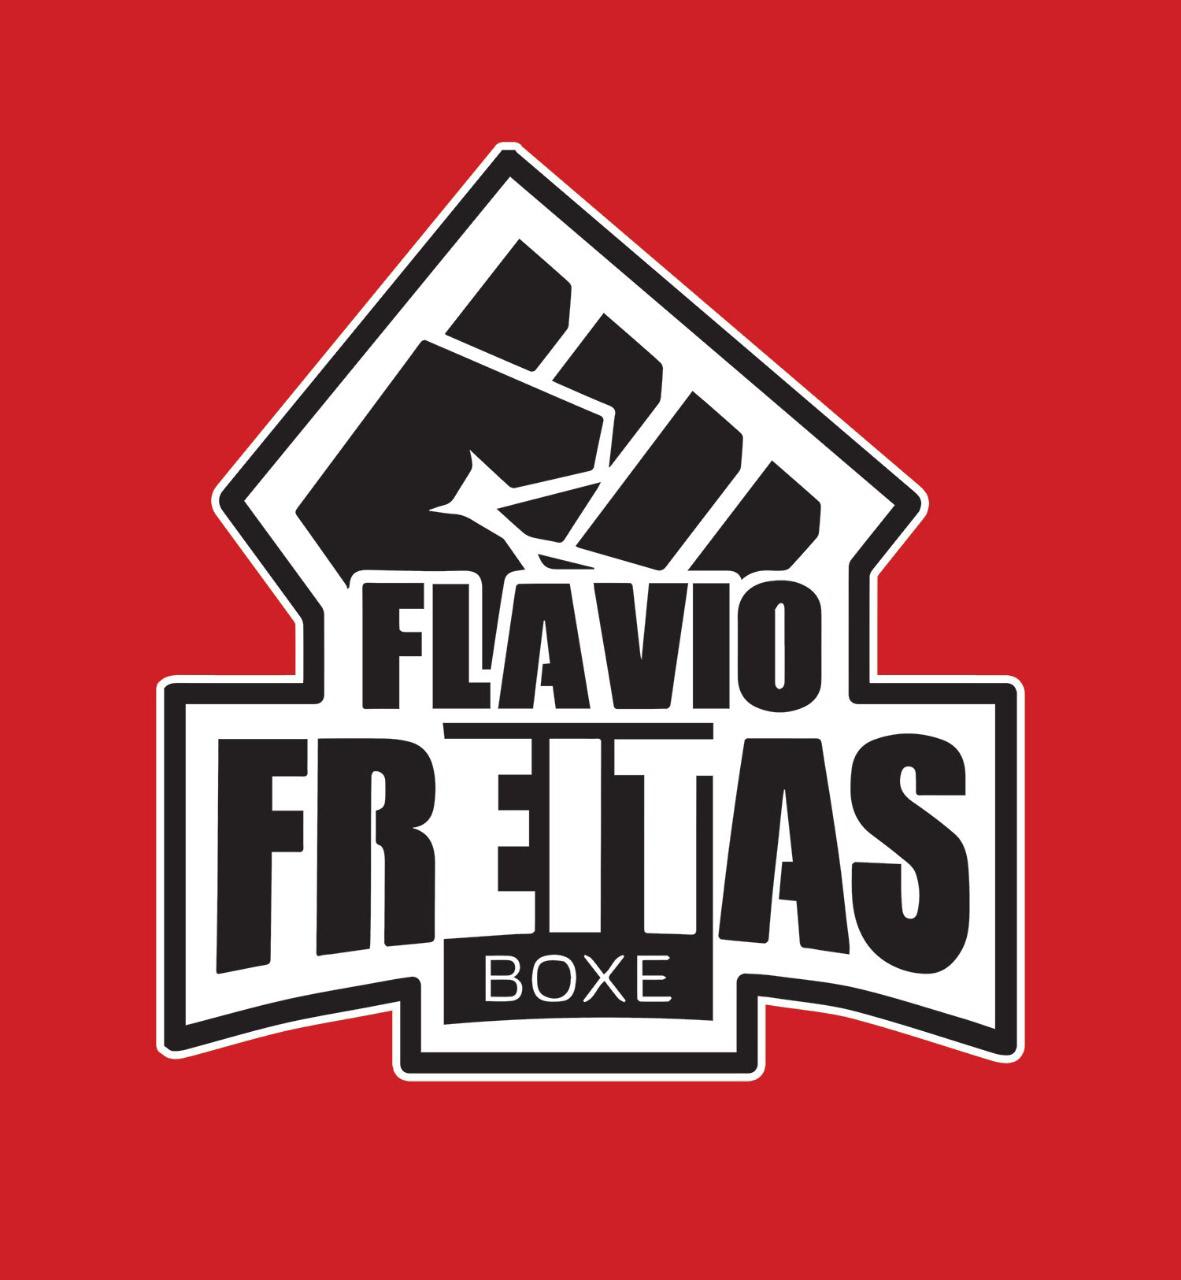 Team Flávio Freitas Boxe